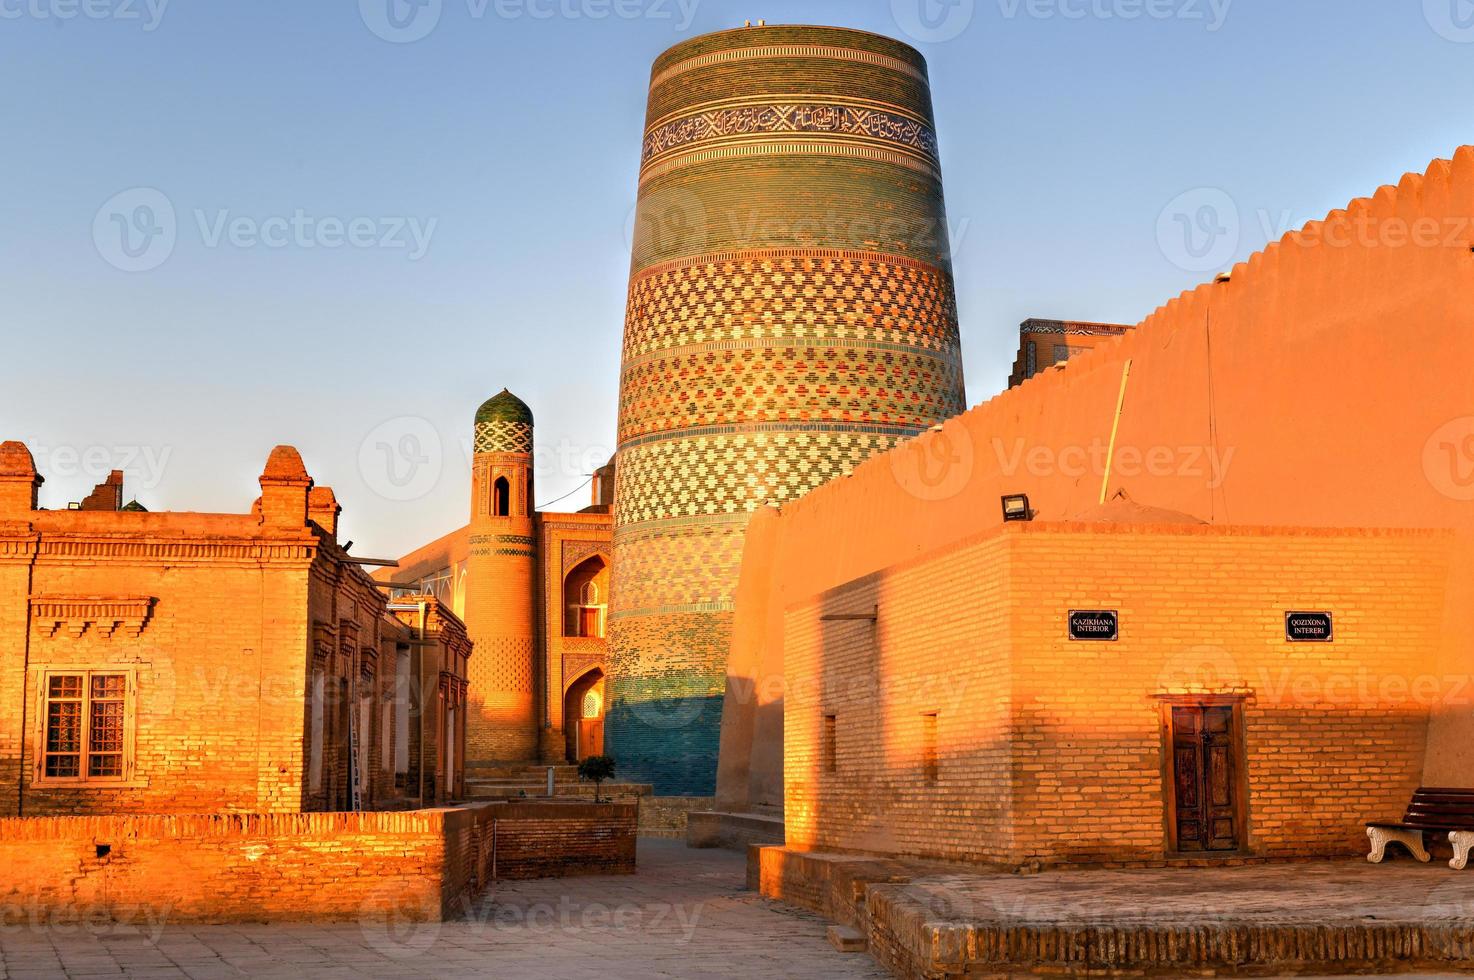 Minarett von Kalta Minor und die historische Architektur von Itchan Kala, der ummauerten Innenstadt der Stadt Chiwa, Usbekistan, die zum UNESCO-Weltkulturerbe gehört. foto